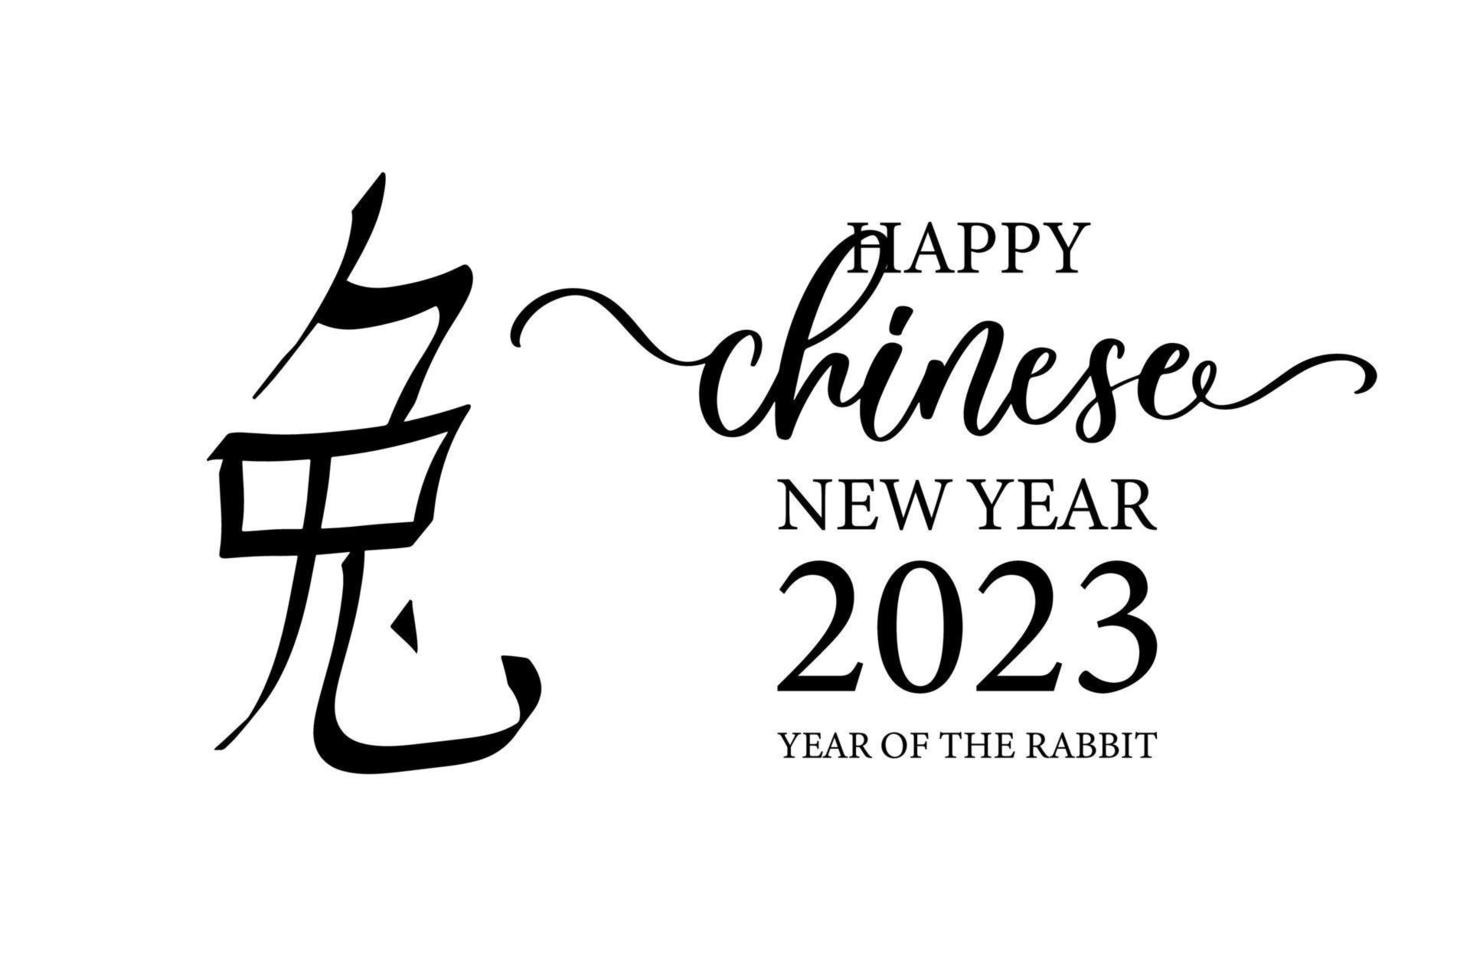 ano novo chinês 2023. letras para design símbolo do zodíaco chinês, conceito de ano novo lunar, design moderno de fundo. vetor